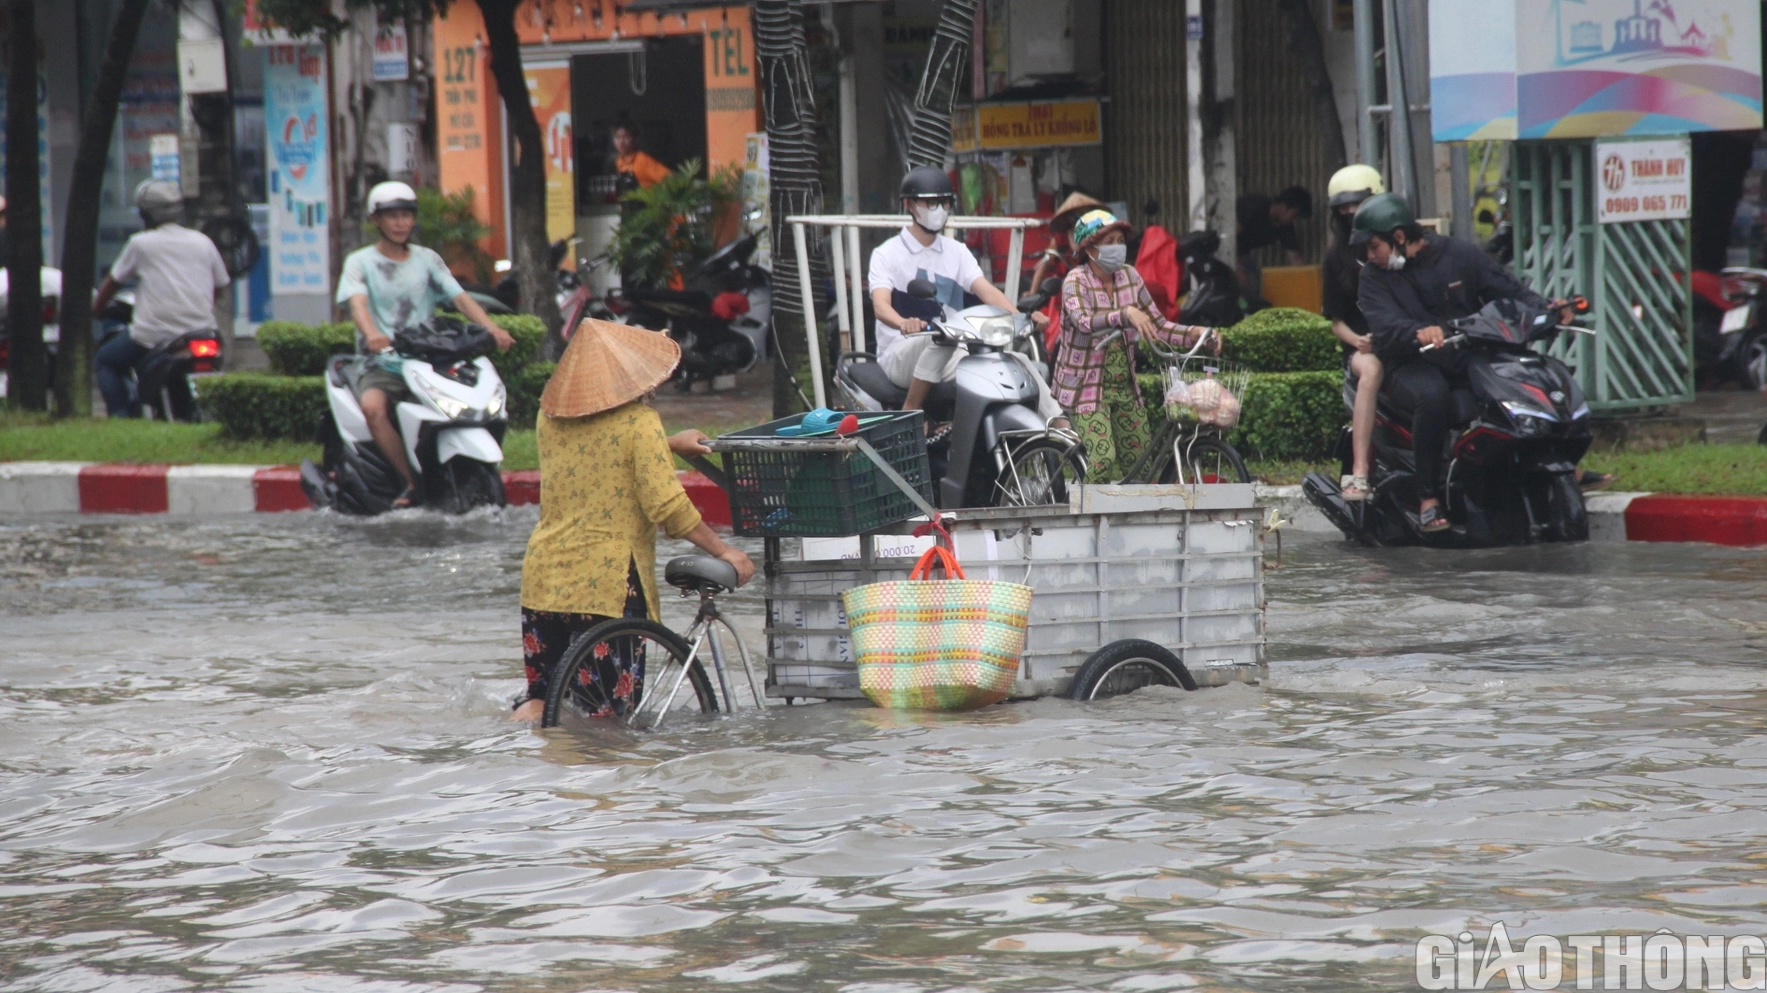 Người dân Bạc Liêu bì bõm dẫn xe lội nước sau cơn mưa lớn kéo dài - Ảnh 11.